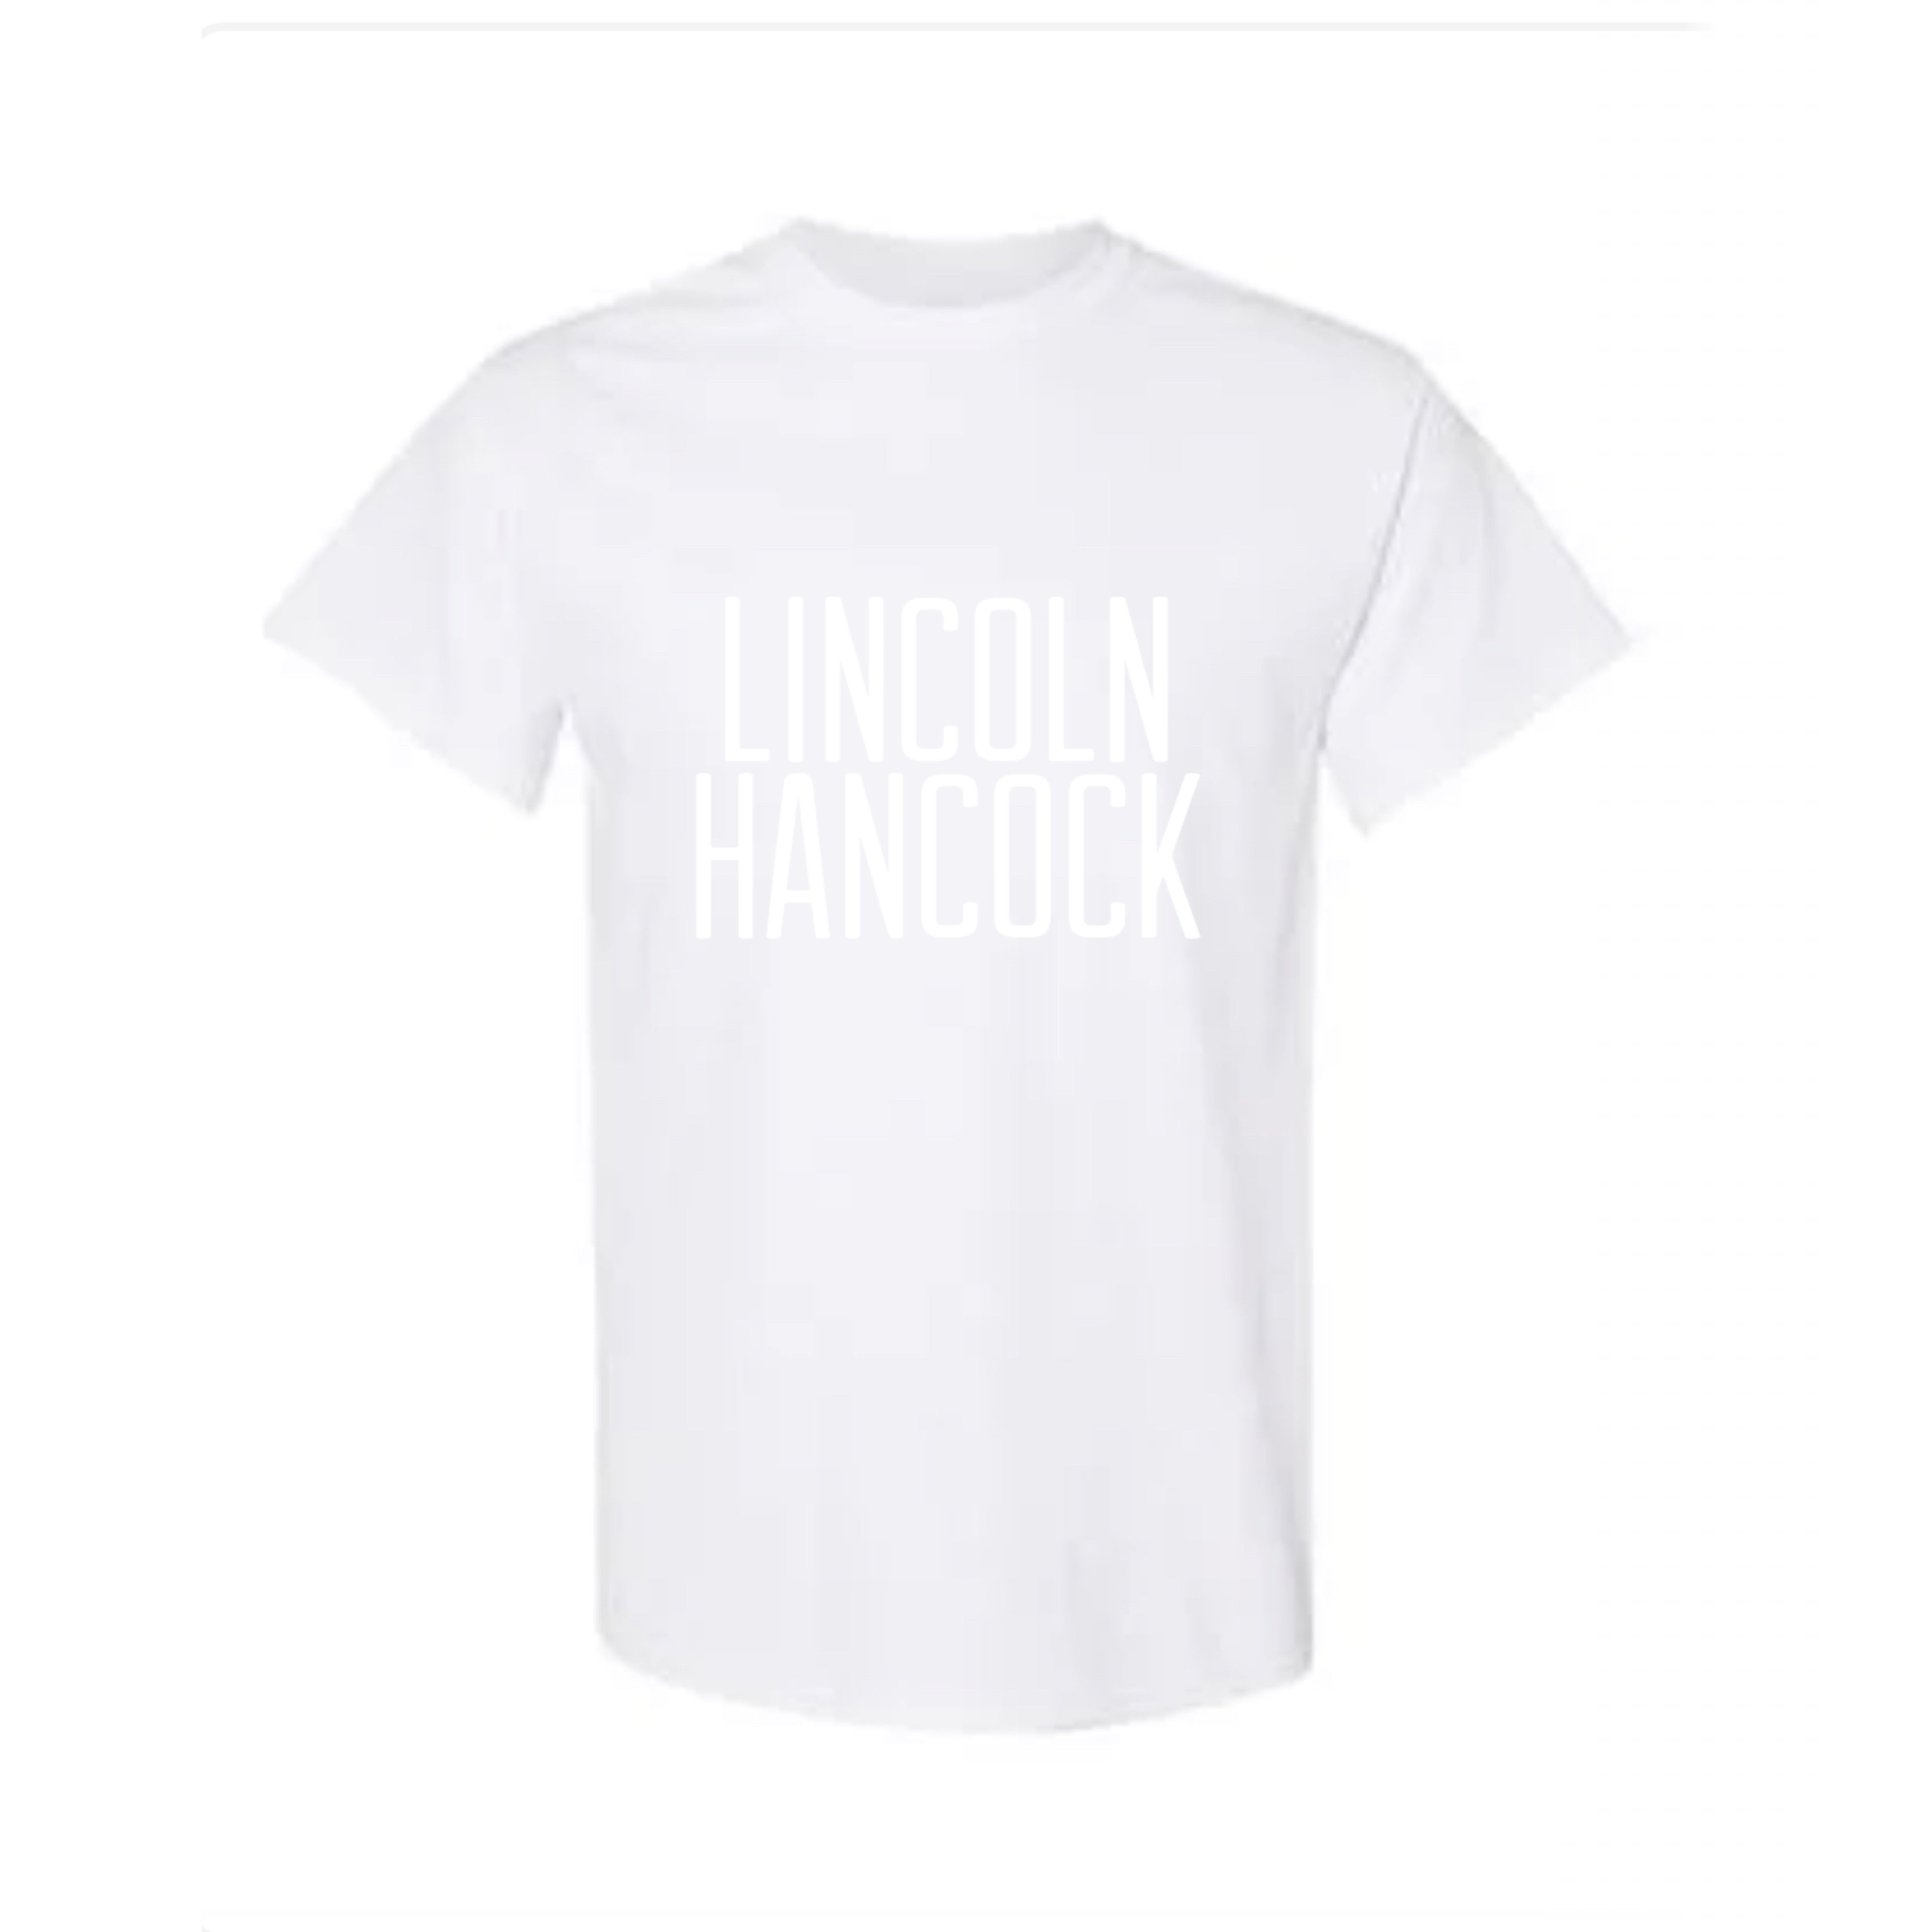 Adult T-shirt - LINCOLN HANCOCK!